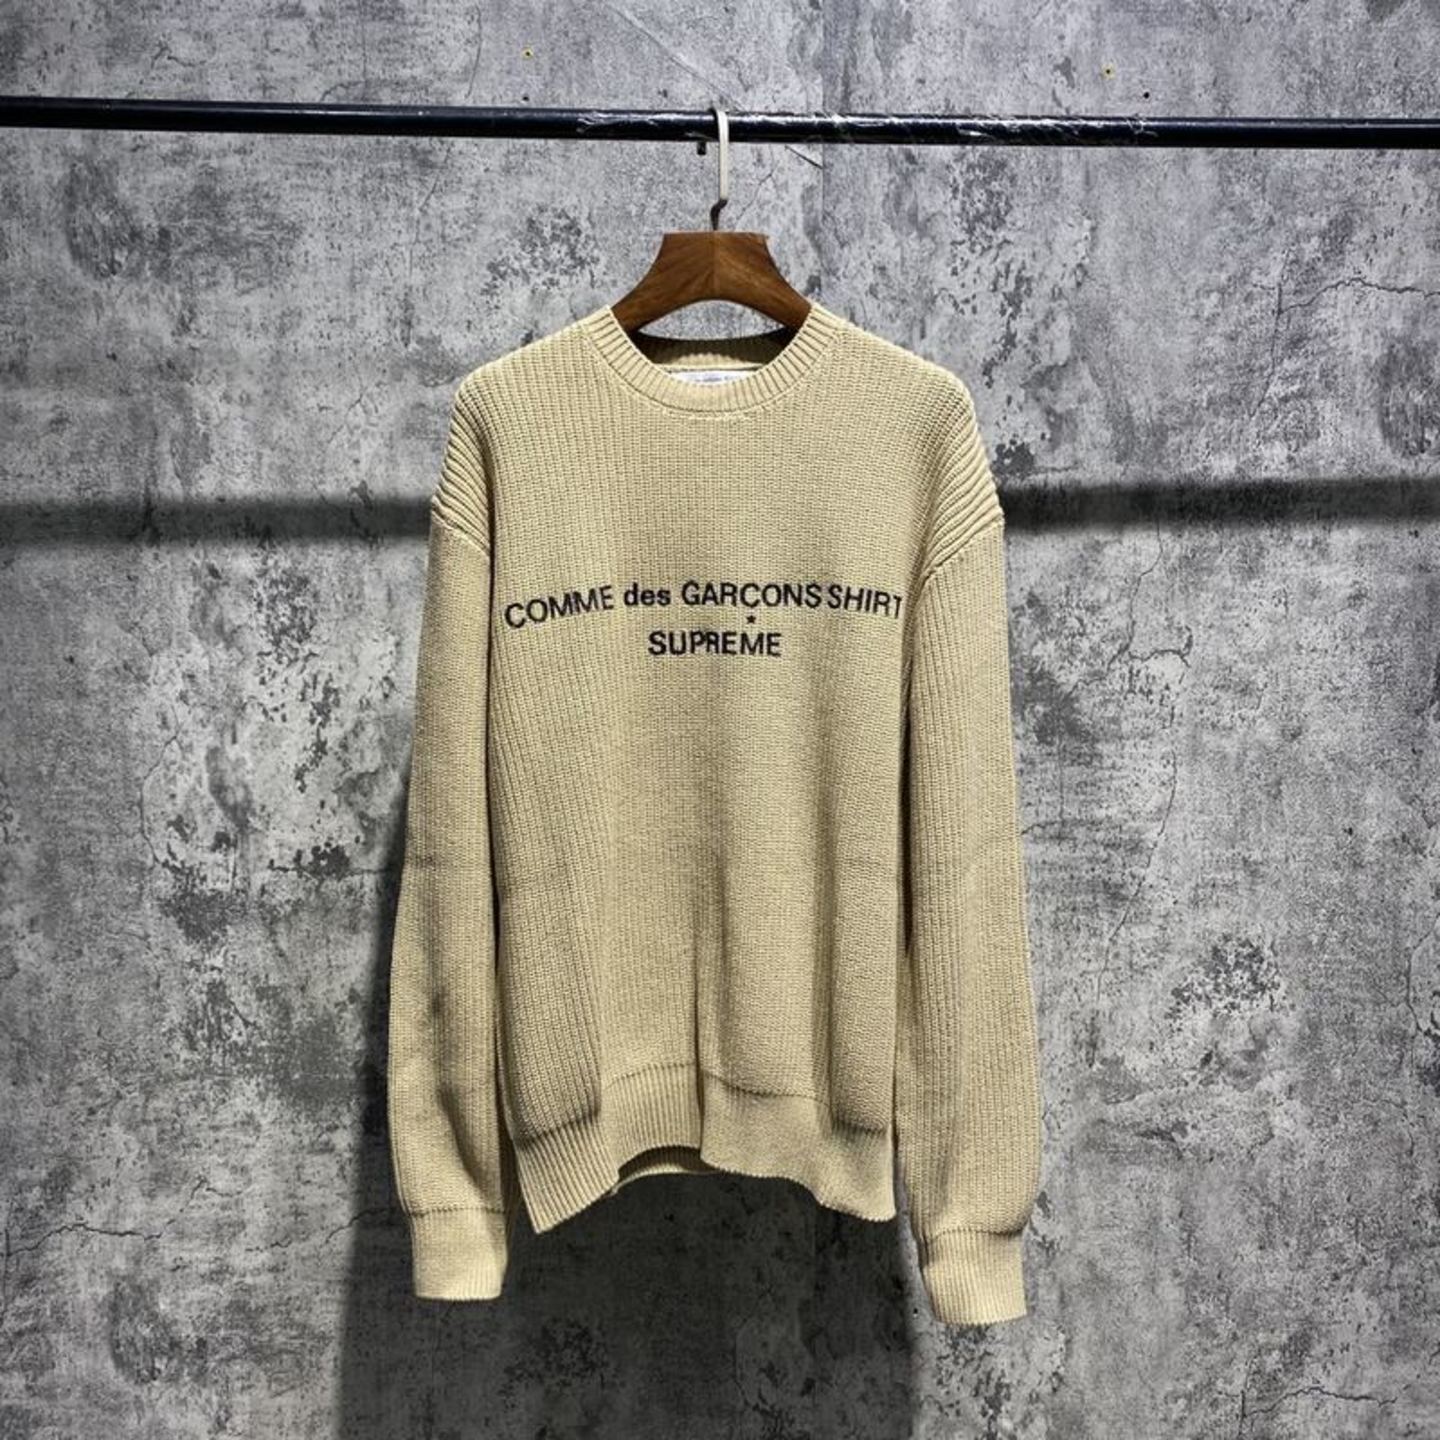 Supreme x Comme des Garcons Sweater